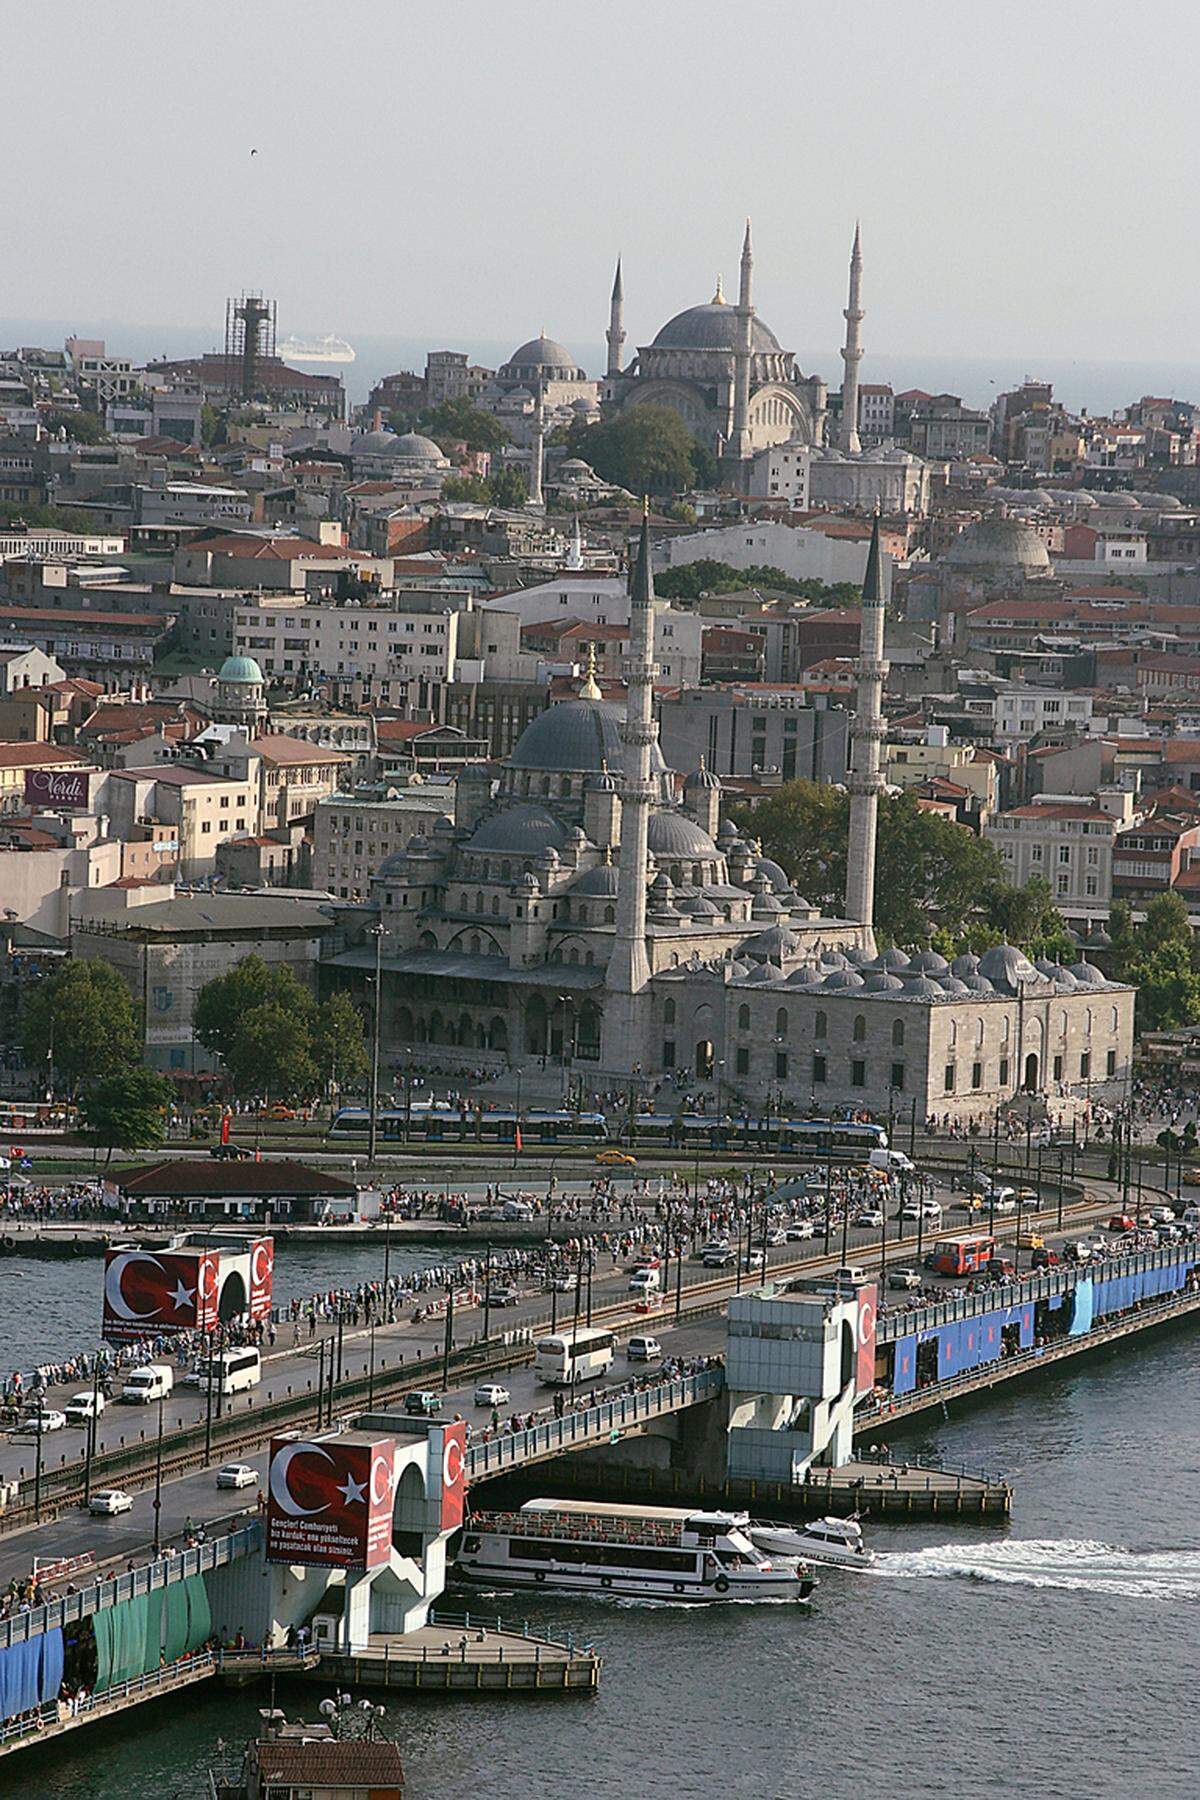 ... eine rasante Verfolgungsjagd: Nur diesmal auf den Dächern der pulsierenden Metropole am Bosporus.Die Dreharbeiten fanden im Stadtteil Eminönü, der berühmt ist für die Hagia Sophia, statt.